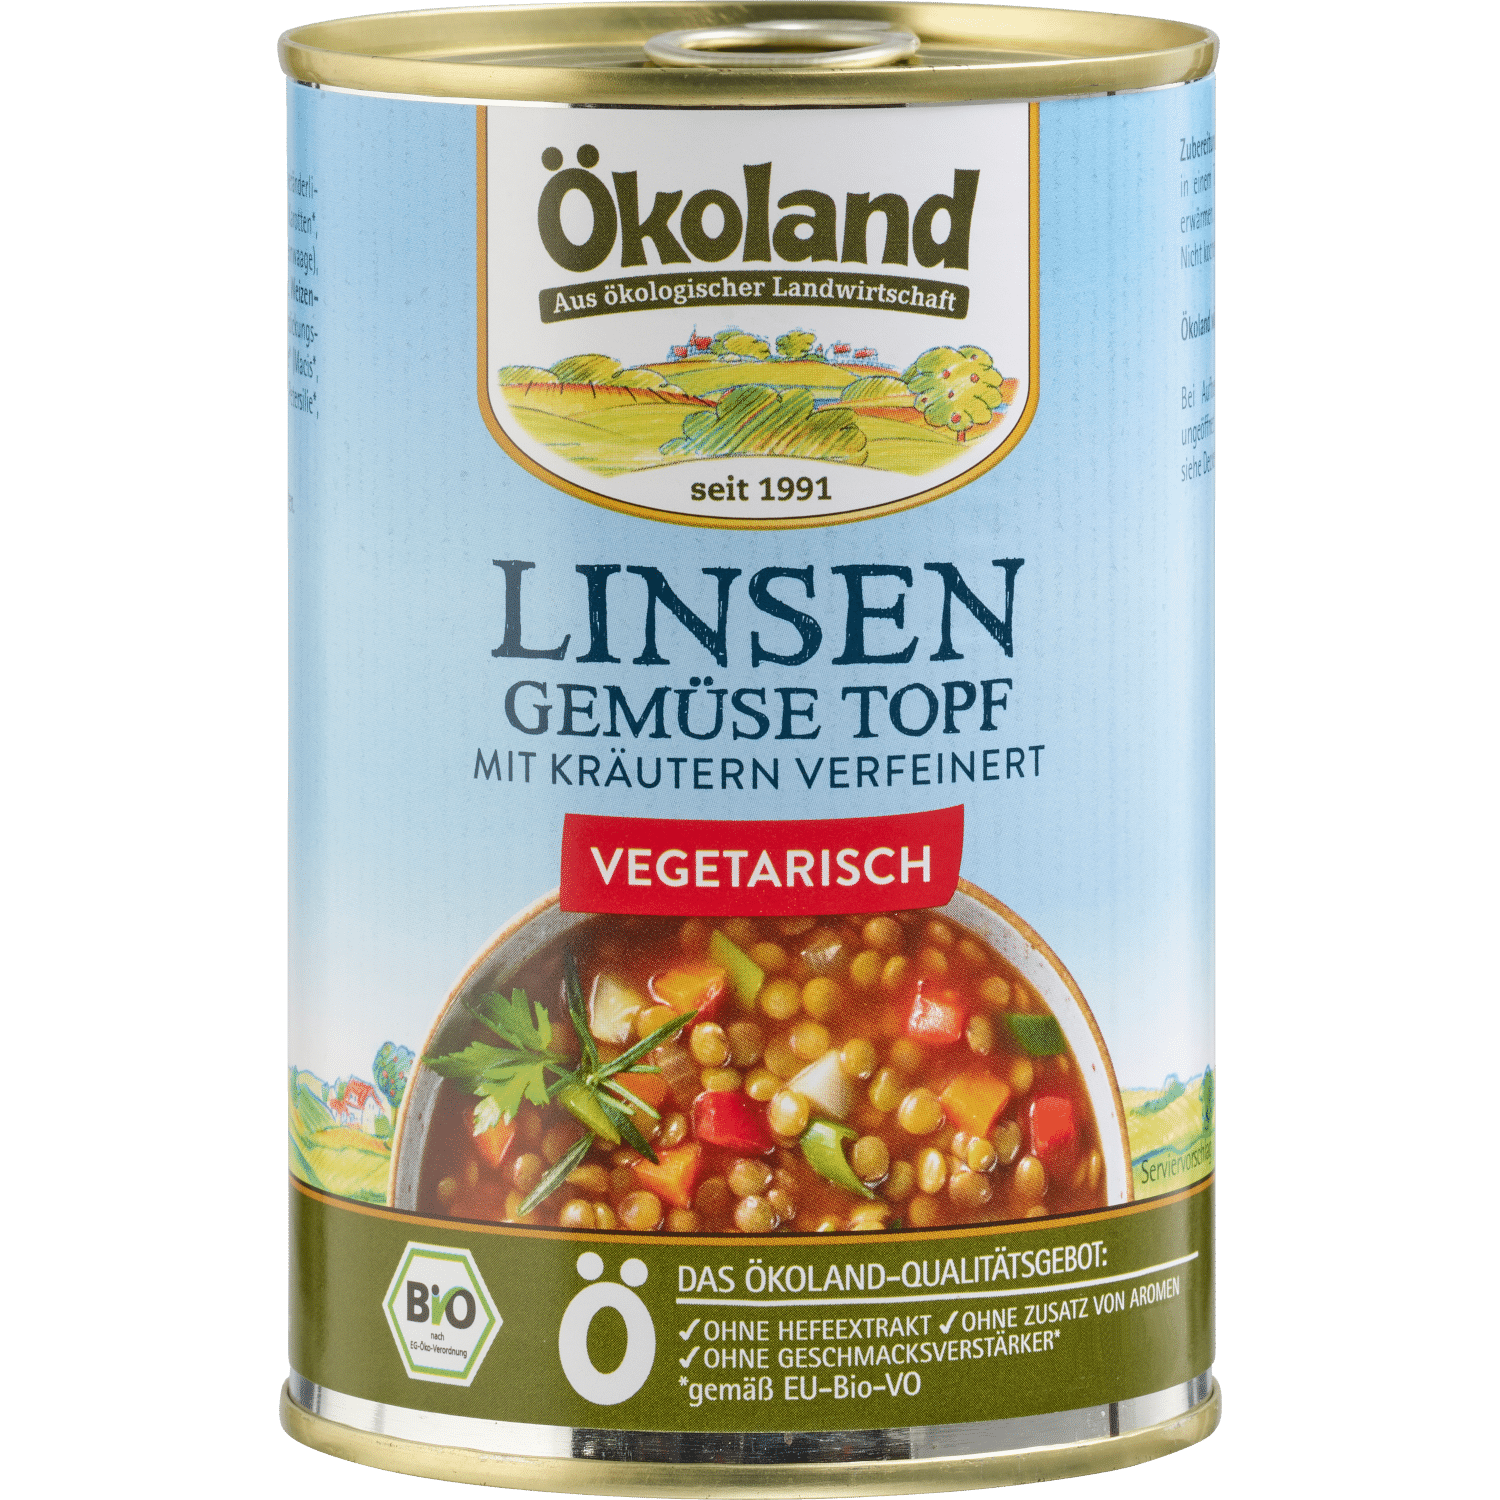 Linsen-Gemüse-Topf, vegetarisch